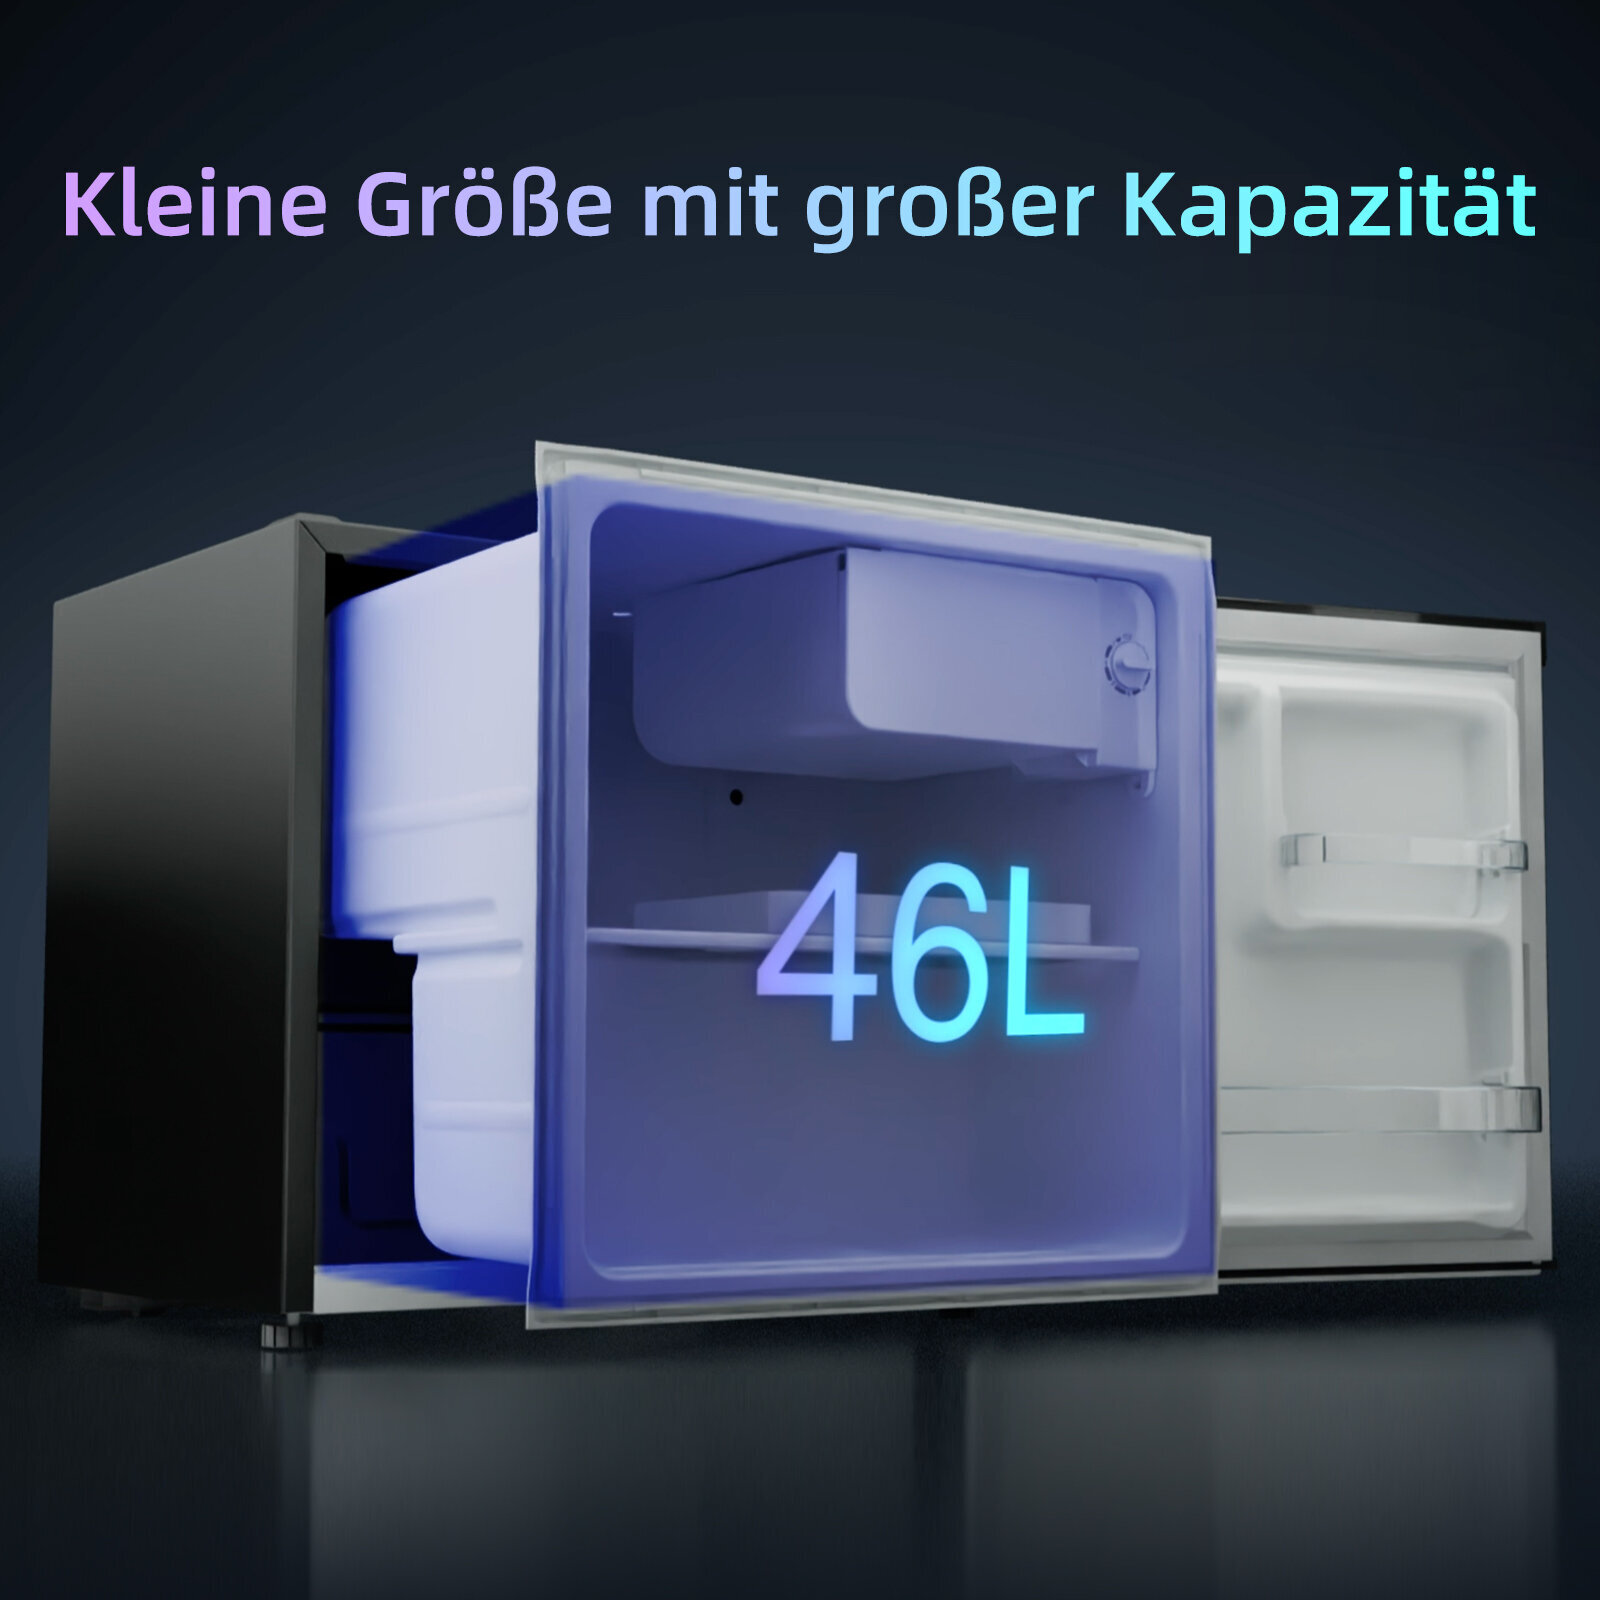 Kühlschrank CHIQ 496 Schwarz) mm CSD46D4E (E, hoch,